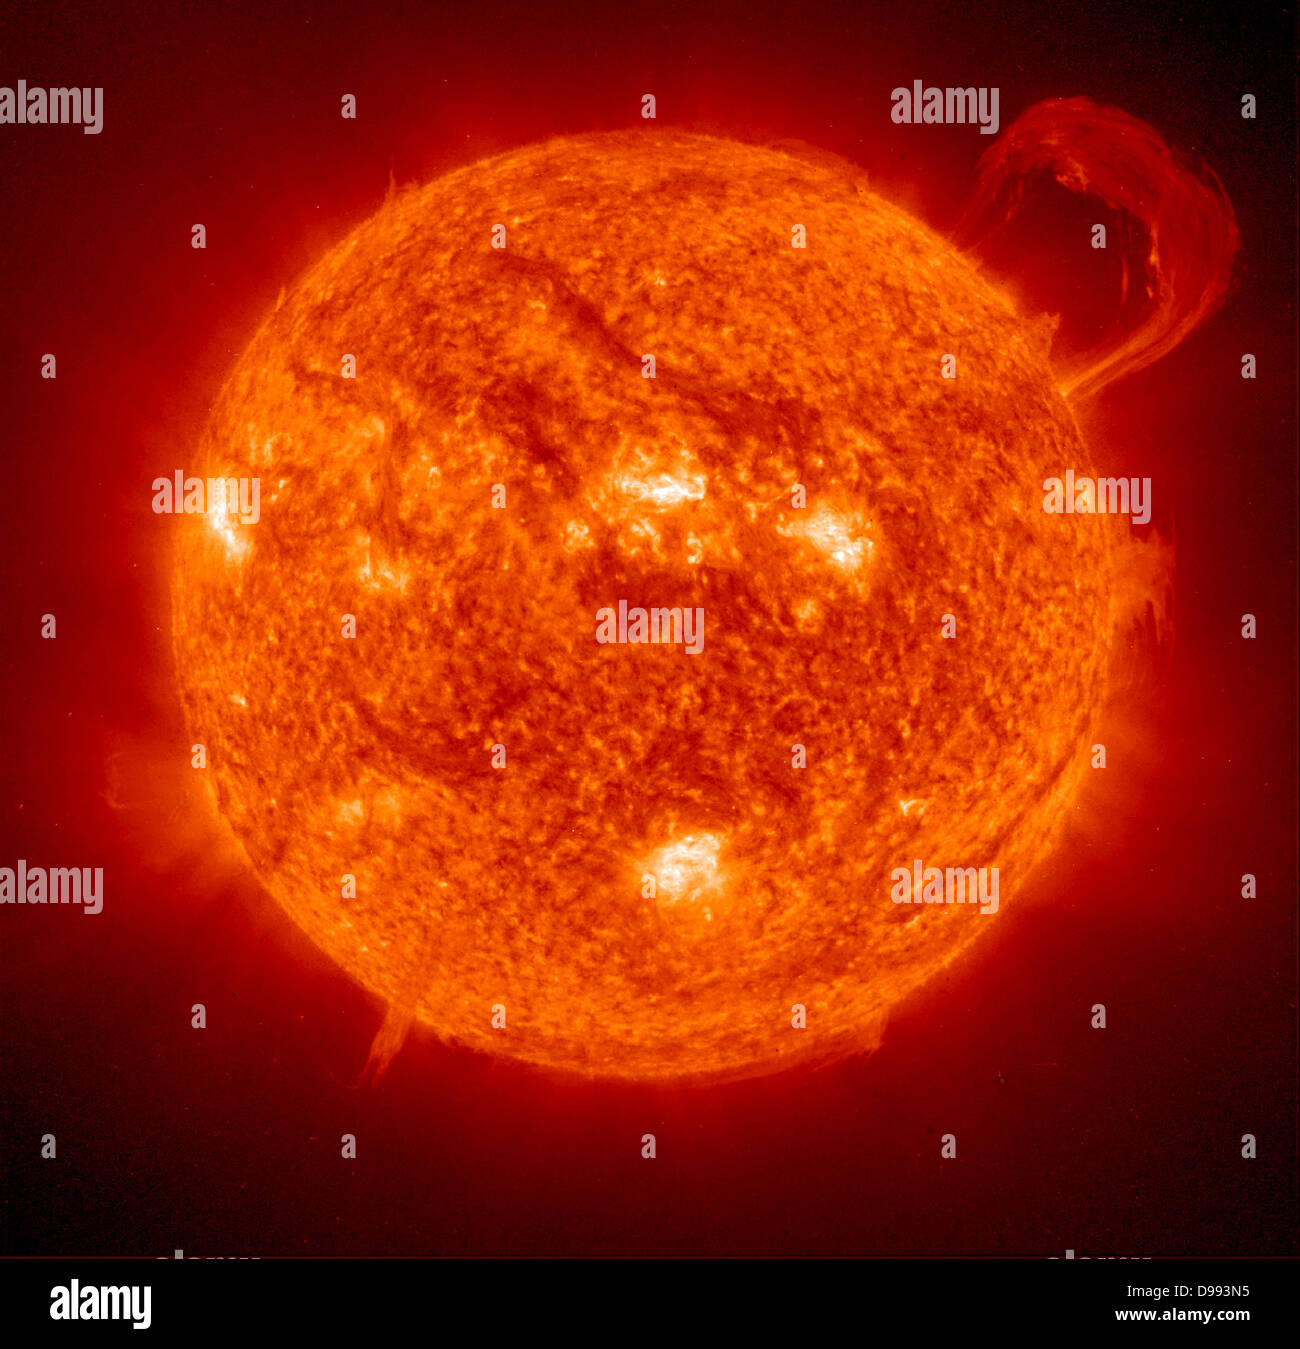 Prominenza solare immagini e fotografie stock ad alta risoluzione - Alamy